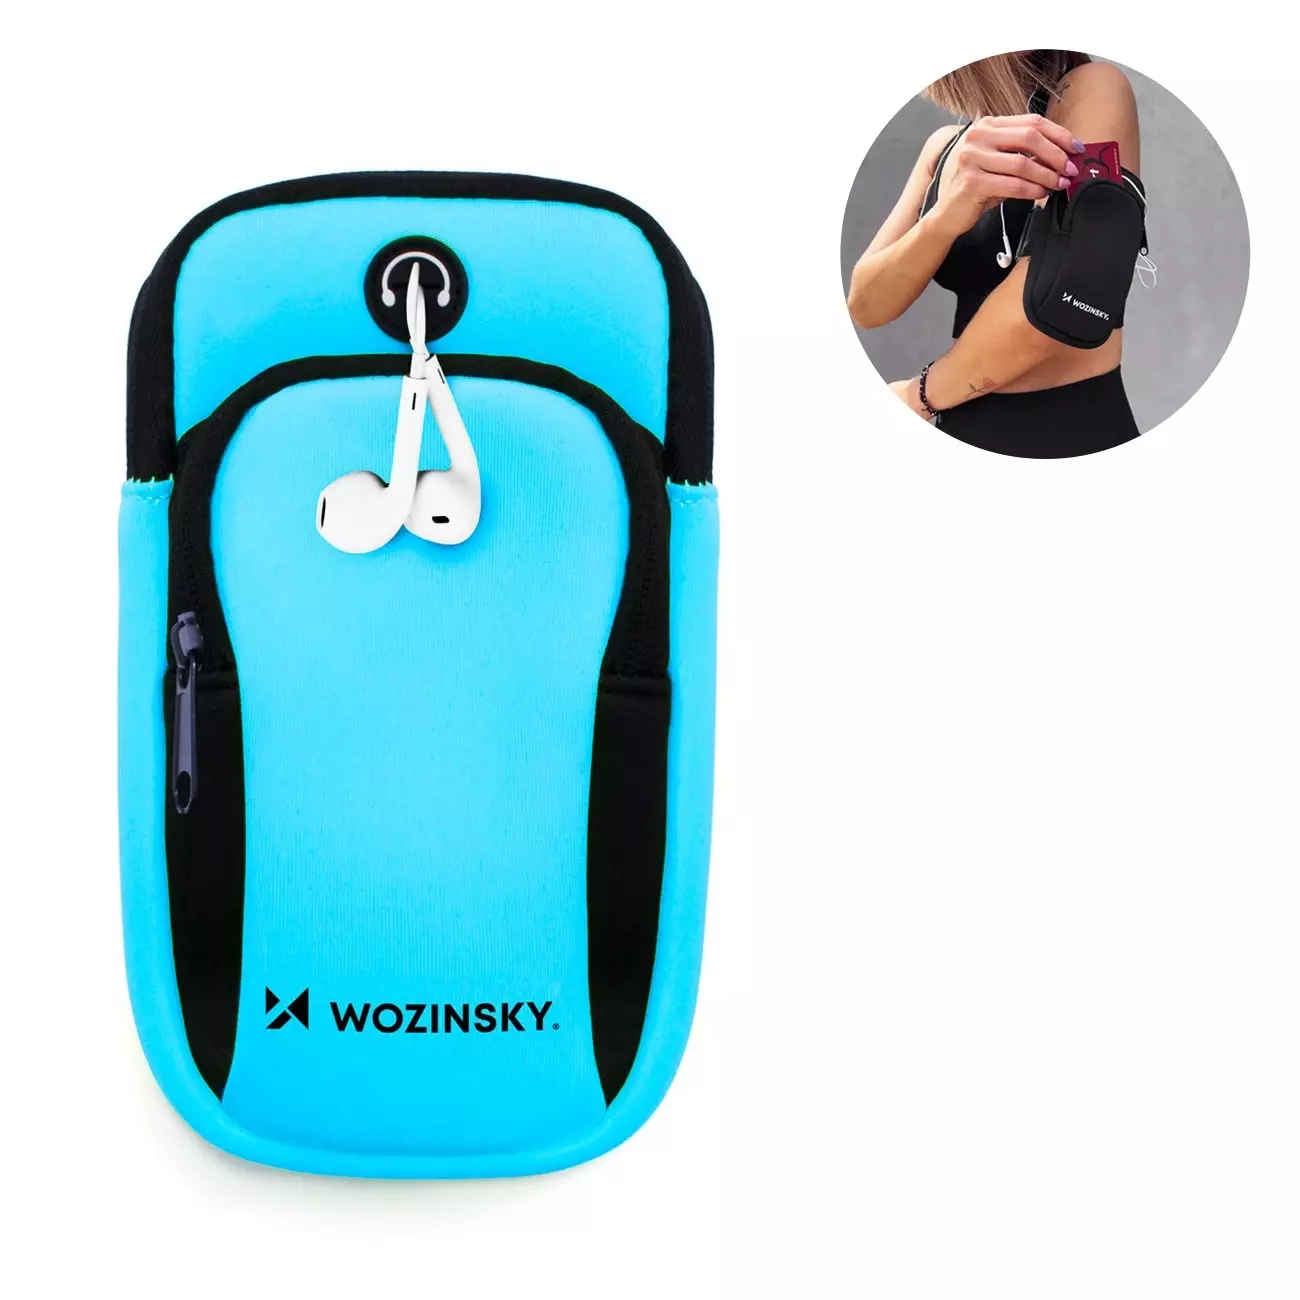 Wozinsky-Armband für Lauftelefon blau (WABBL1) 